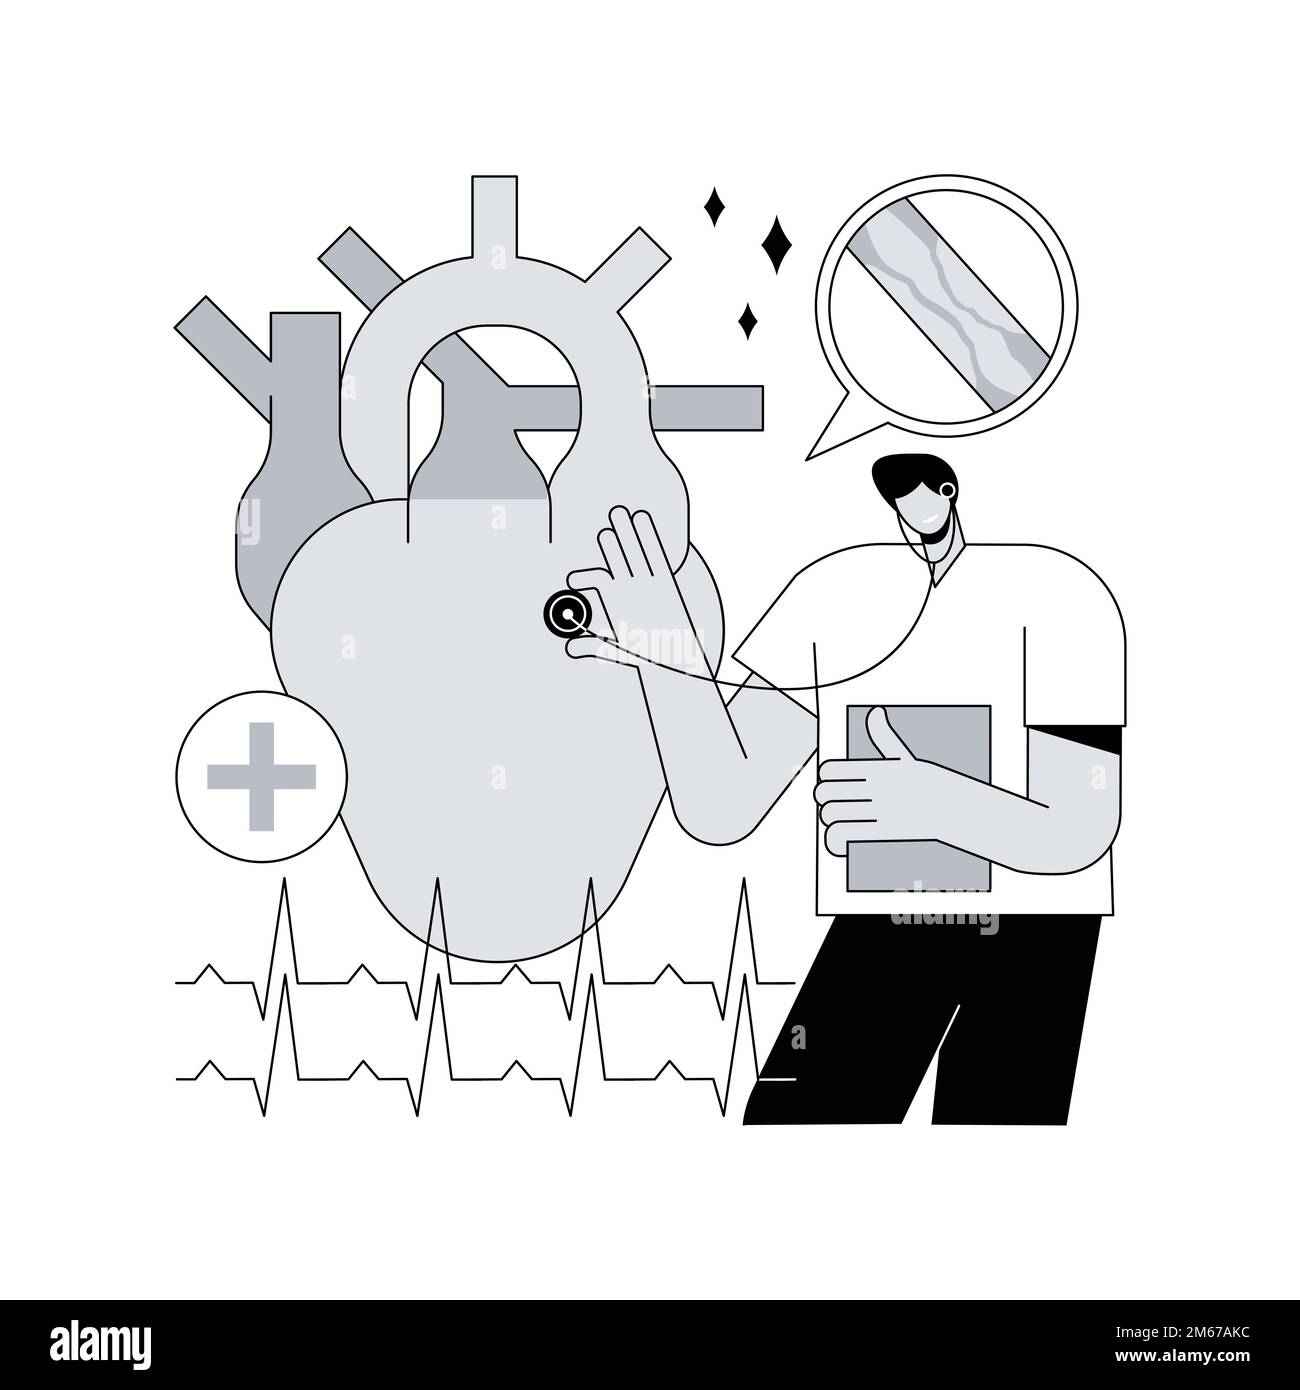 Illustrazione vettoriale del concetto di cardiopatia ischemica astratta. Disfunzione cardiaca, problema ischemico, coronaropatia, rischio di infarto, ischemia s. Illustrazione Vettoriale